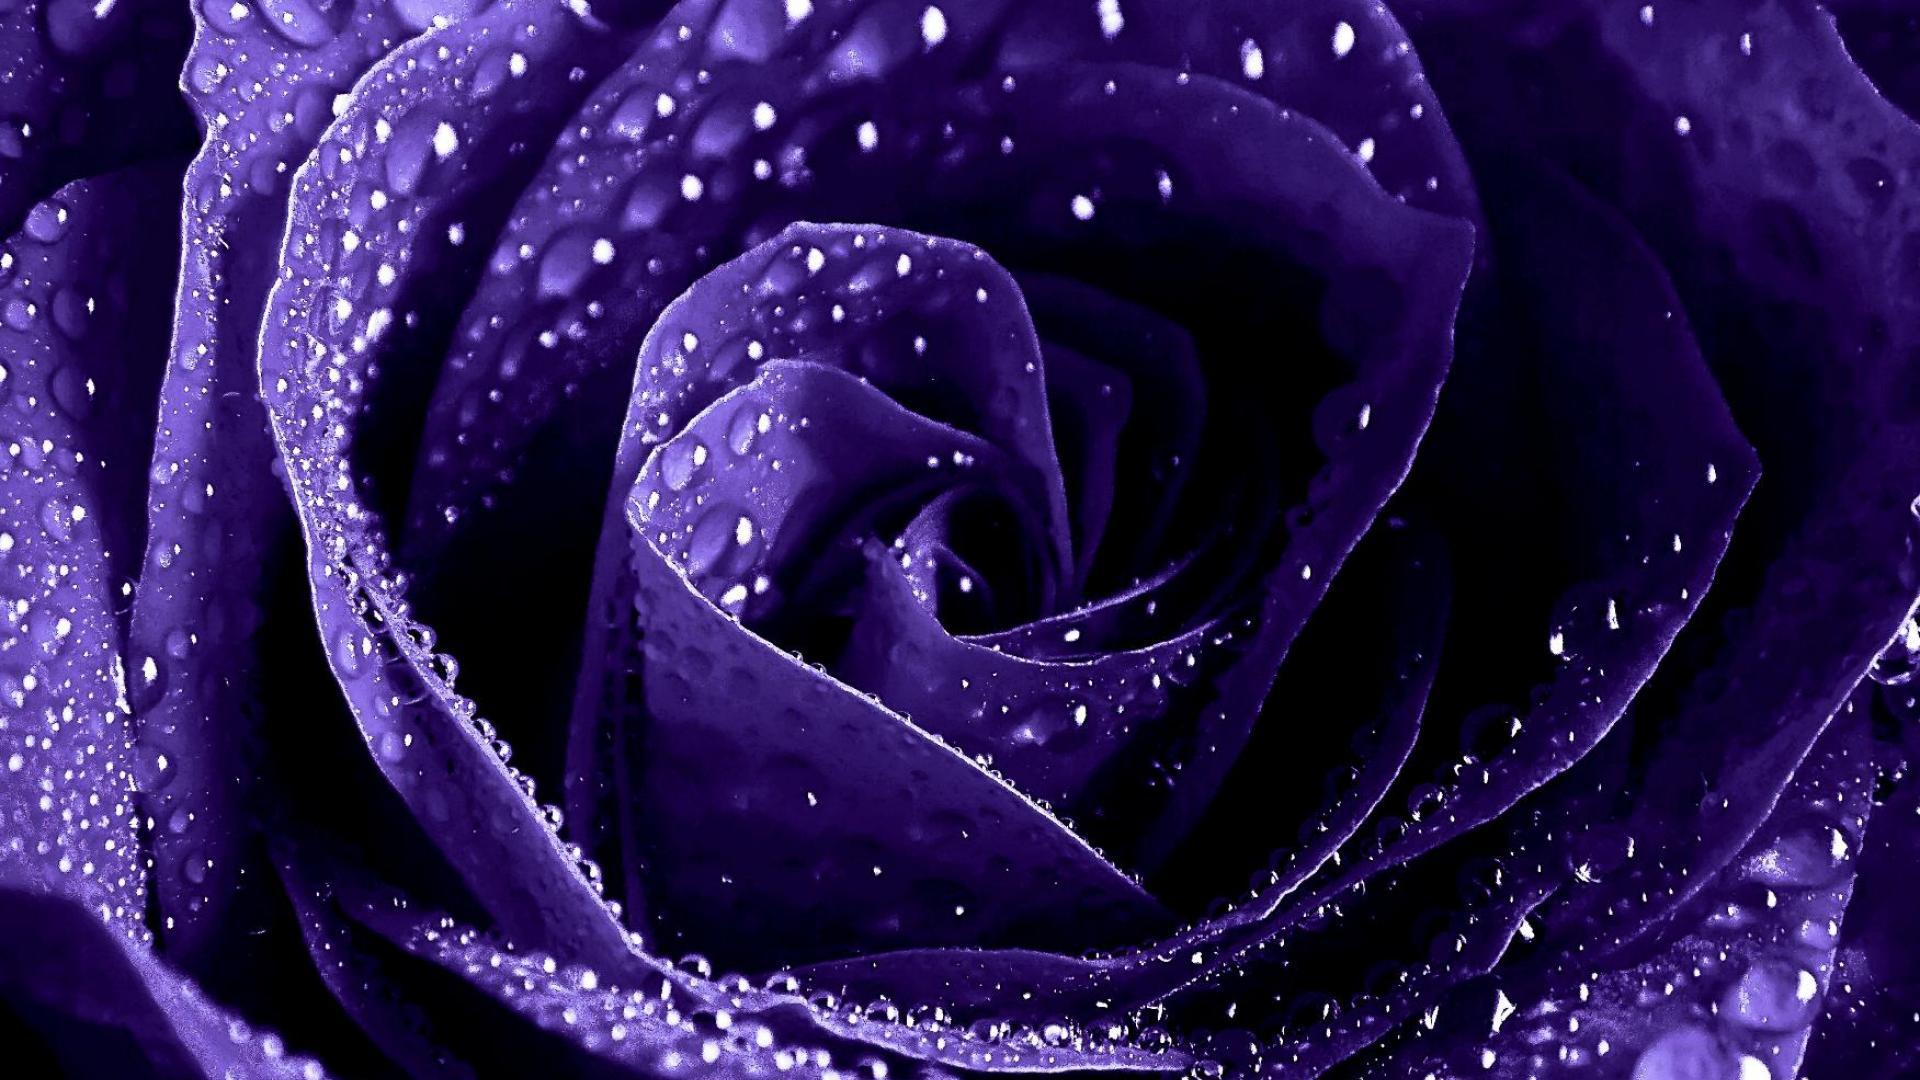  45 Dark Purple Roses  Wallpaper on WallpaperSafari